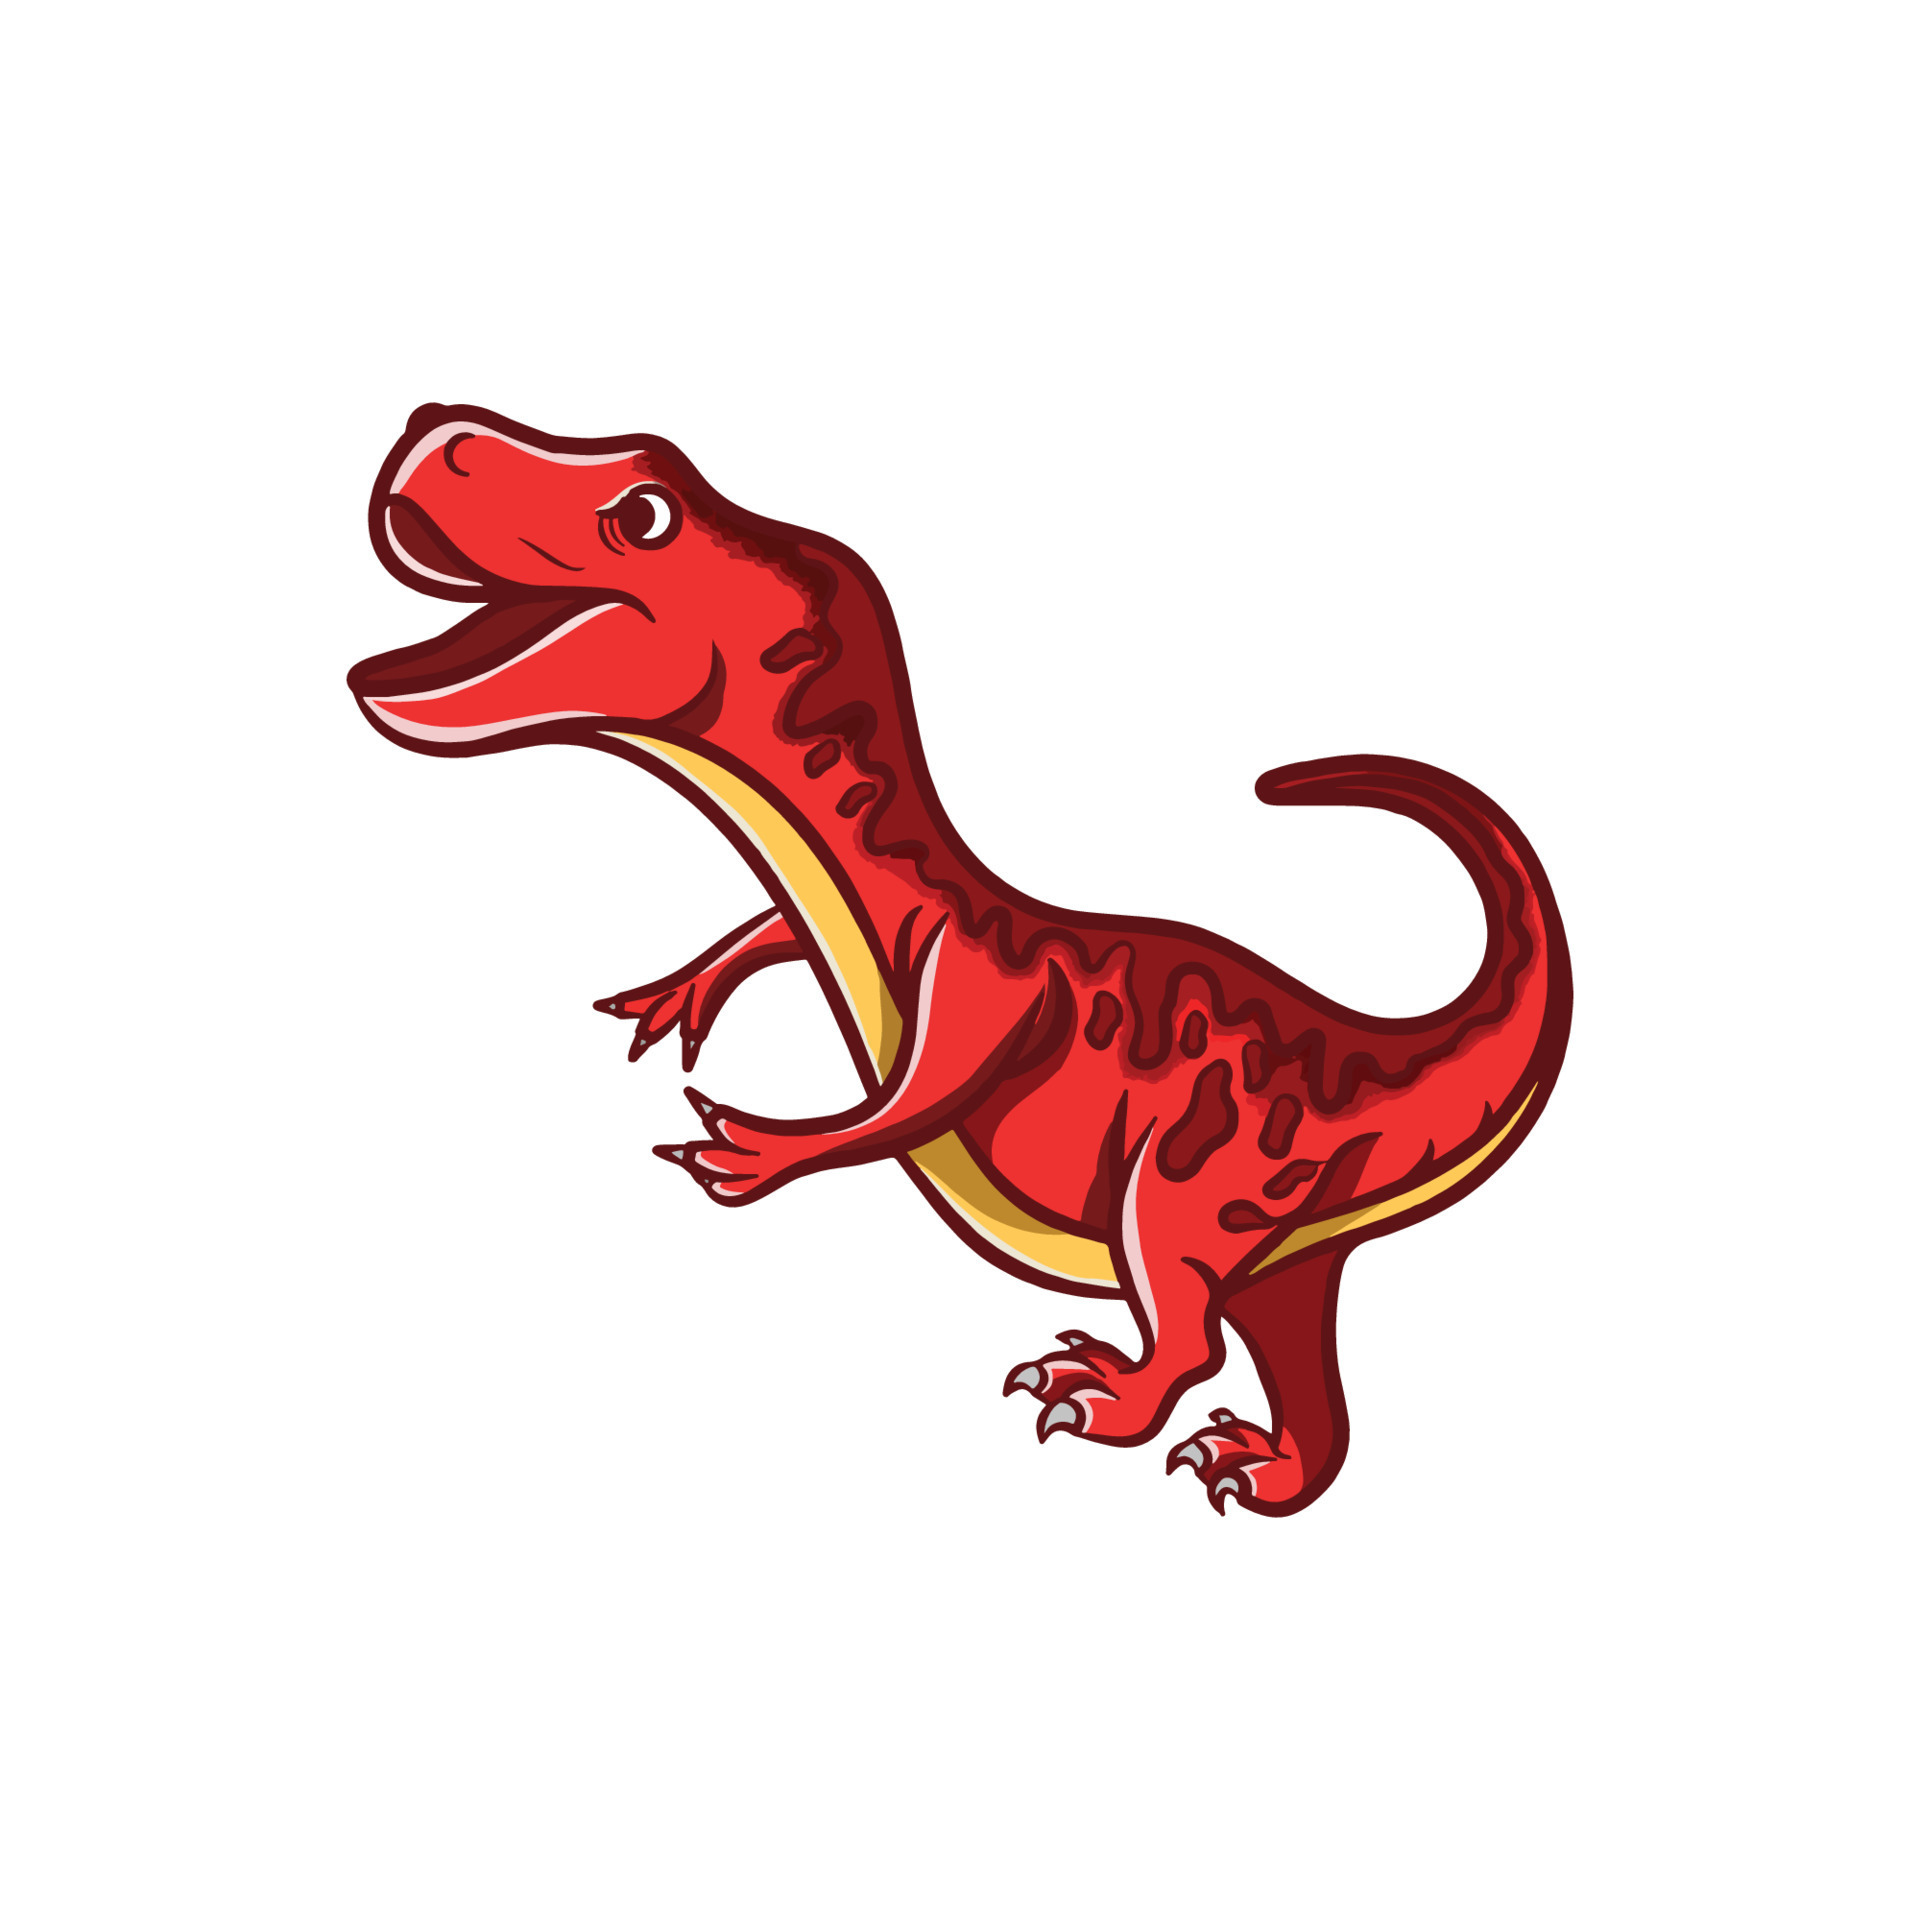 design de ilustração de desenho animado de dinossauro fofo